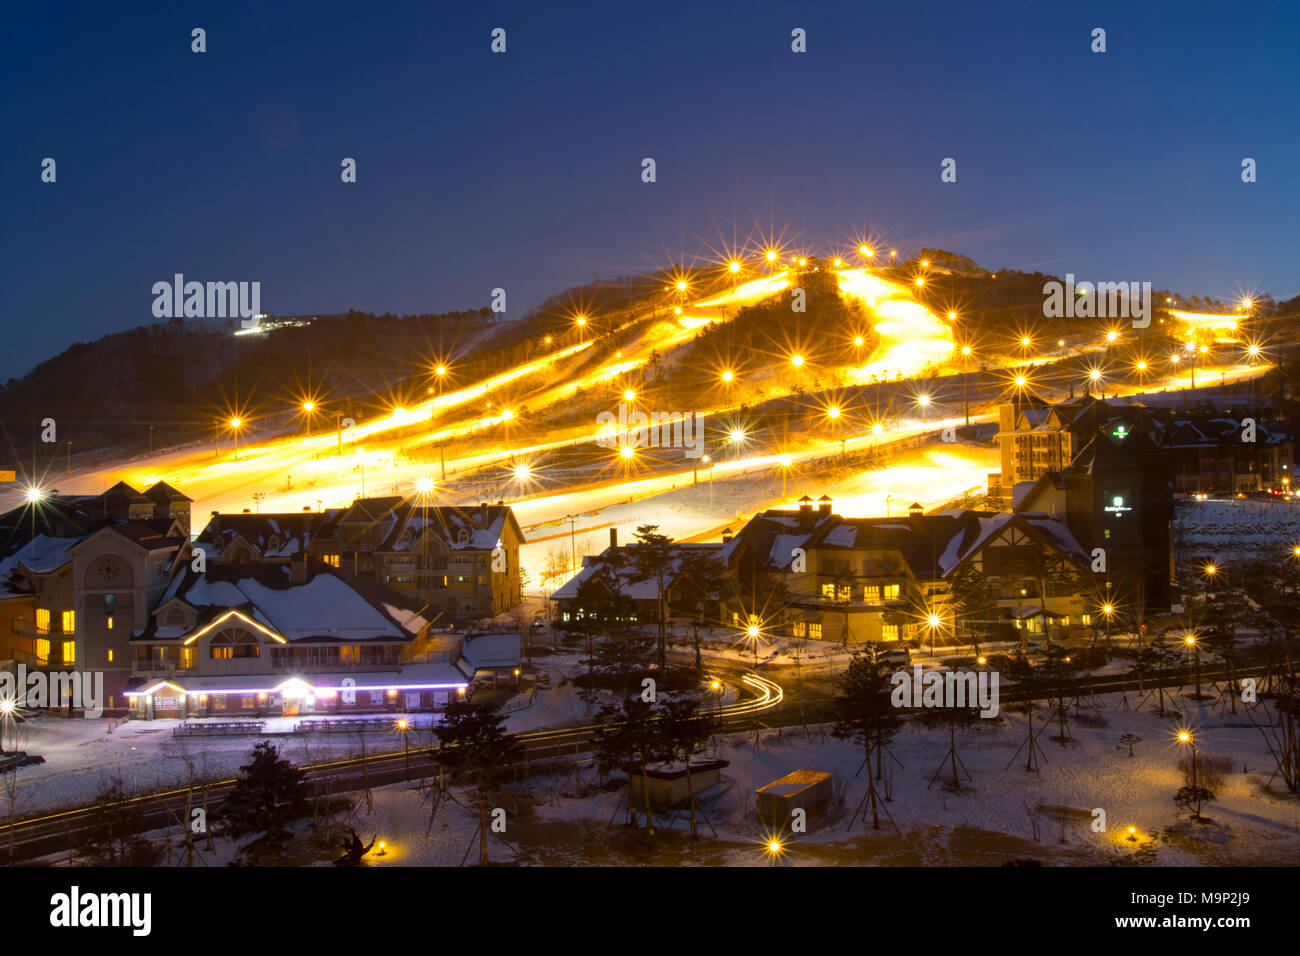 In der Nacht der Alpensia Resort in der Region Gangwon-do in Südkorea leuchtet durch Leuchten. Einige koreanische Skigebiete bietet Nachtskifahren für Menschen aus Seoul, die nur nach Arbeitszeit Ski fahren können. Die alpensia Resort ist ein Skigebiet und eine touristische Attraktion. Es ist auf dem Gebiet der Gemeinde von daegwallyeong-myeon befindet sich in der Grafschaft von Pyeongchang, die Olympischen Winterspiele hosting im Februar 2018. Das Skigebiet ist ca. 2,5 Stunden von Seoul oder Incheon Airport mit dem Auto, überwiegend alle Autobahn. Alpensia hat sechs Pisten für Ski und Snowboard, mit bis zu 1,4 km Stockfoto